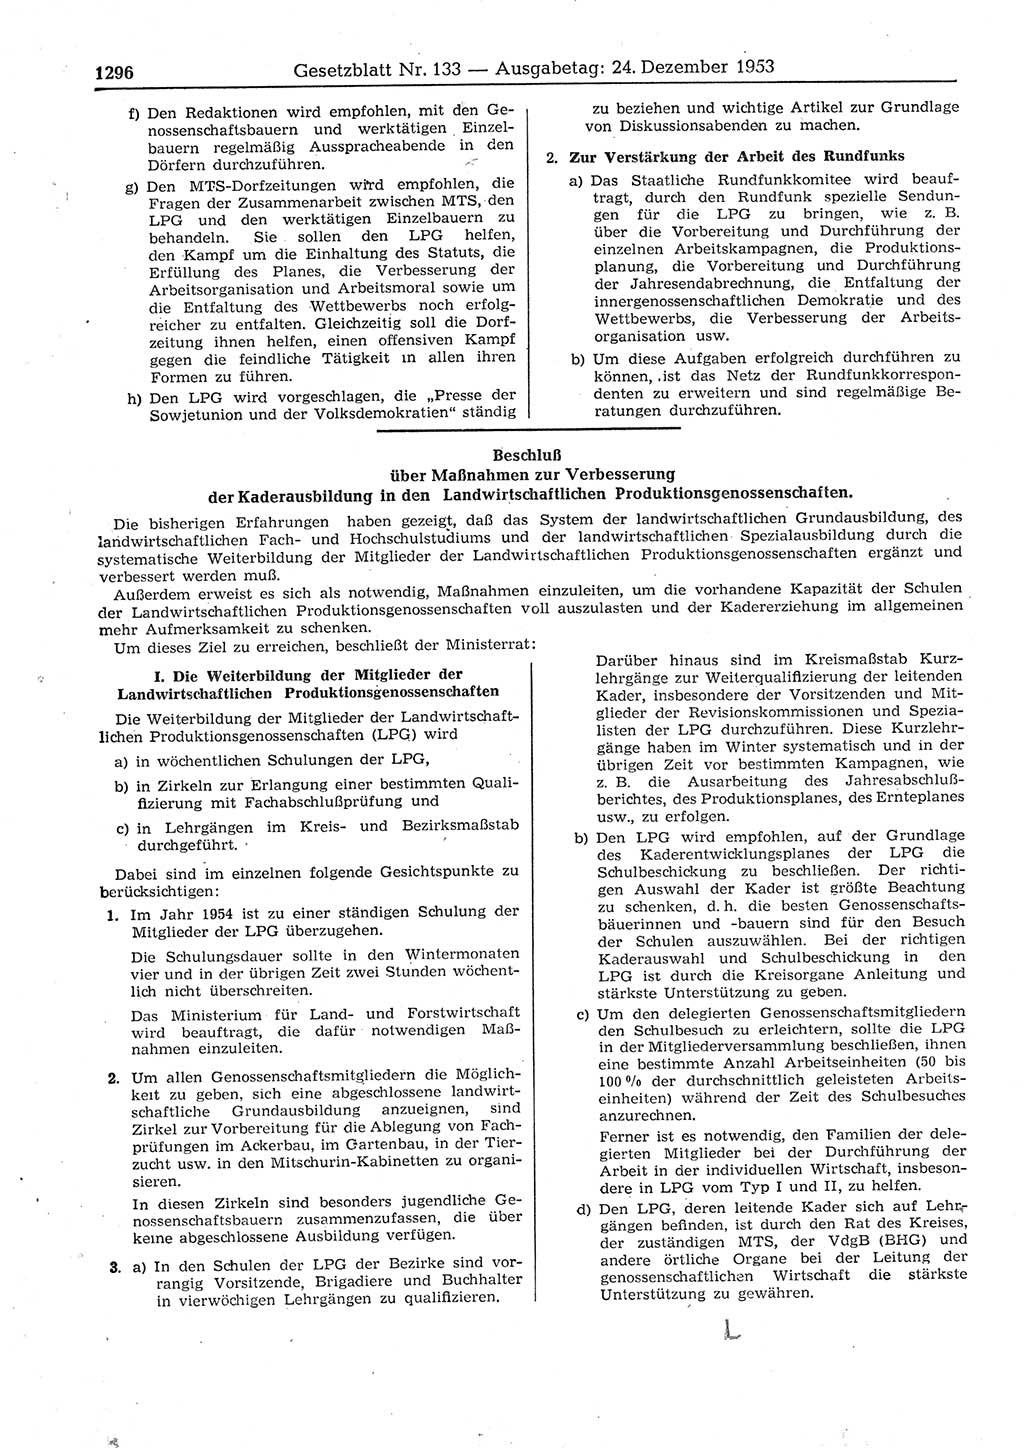 Gesetzblatt (GBl.) der Deutschen Demokratischen Republik (DDR) 1953, Seite 1296 (GBl. DDR 1953, S. 1296)